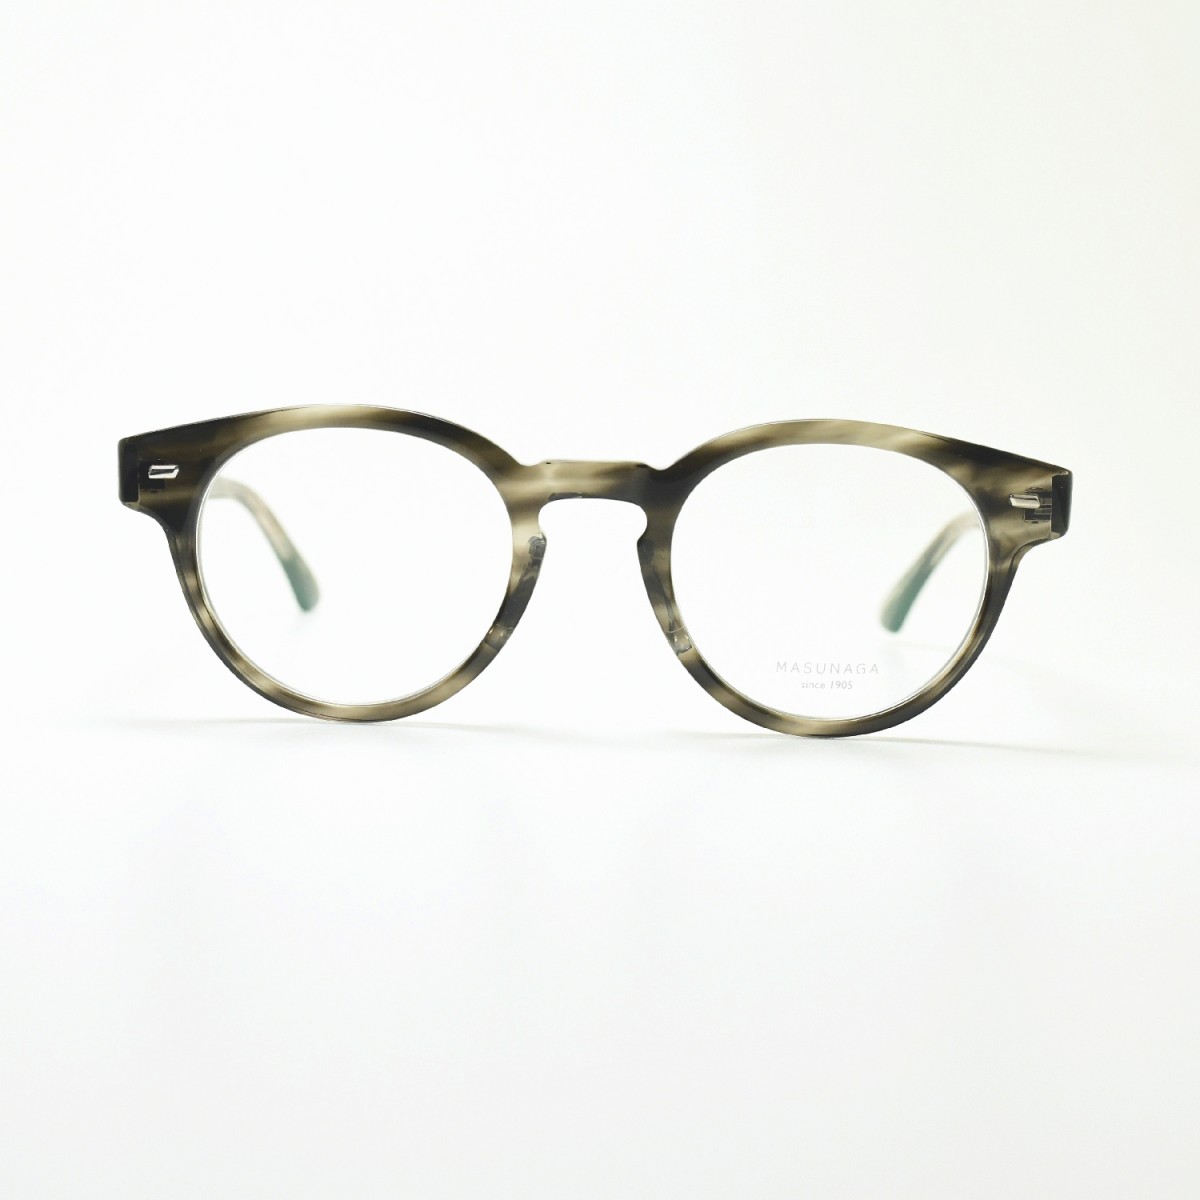 増永眼鏡 MASUNAGA 光輝 064 col-34 GREY メガネ 眼鏡 めがね メンズ 